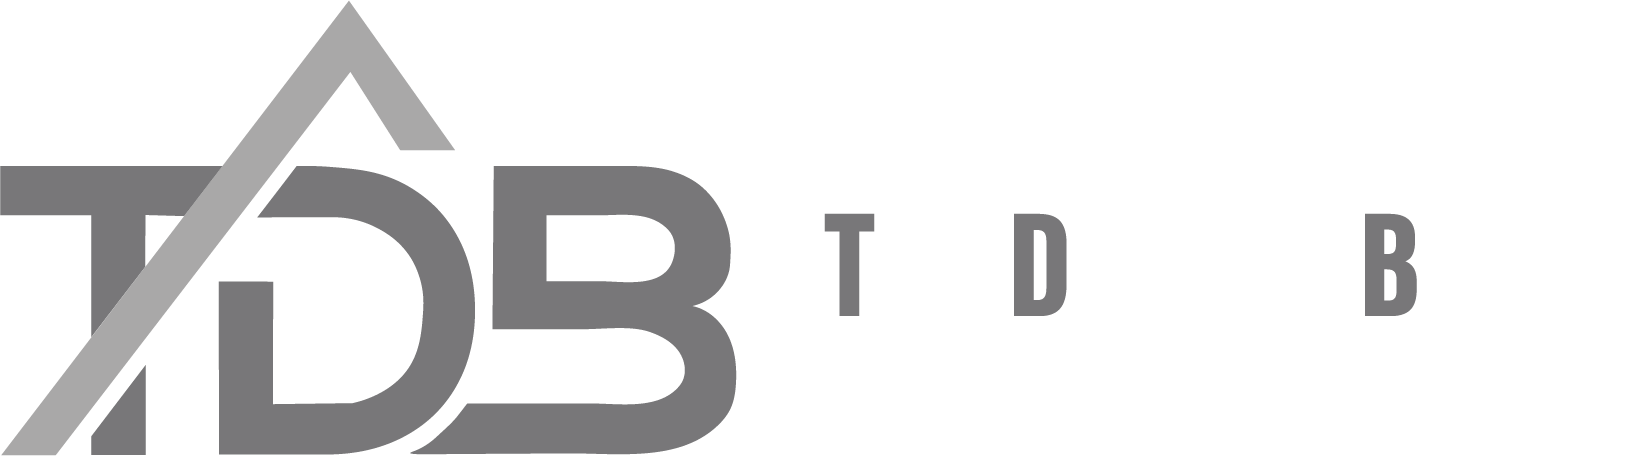 Ted Design Build